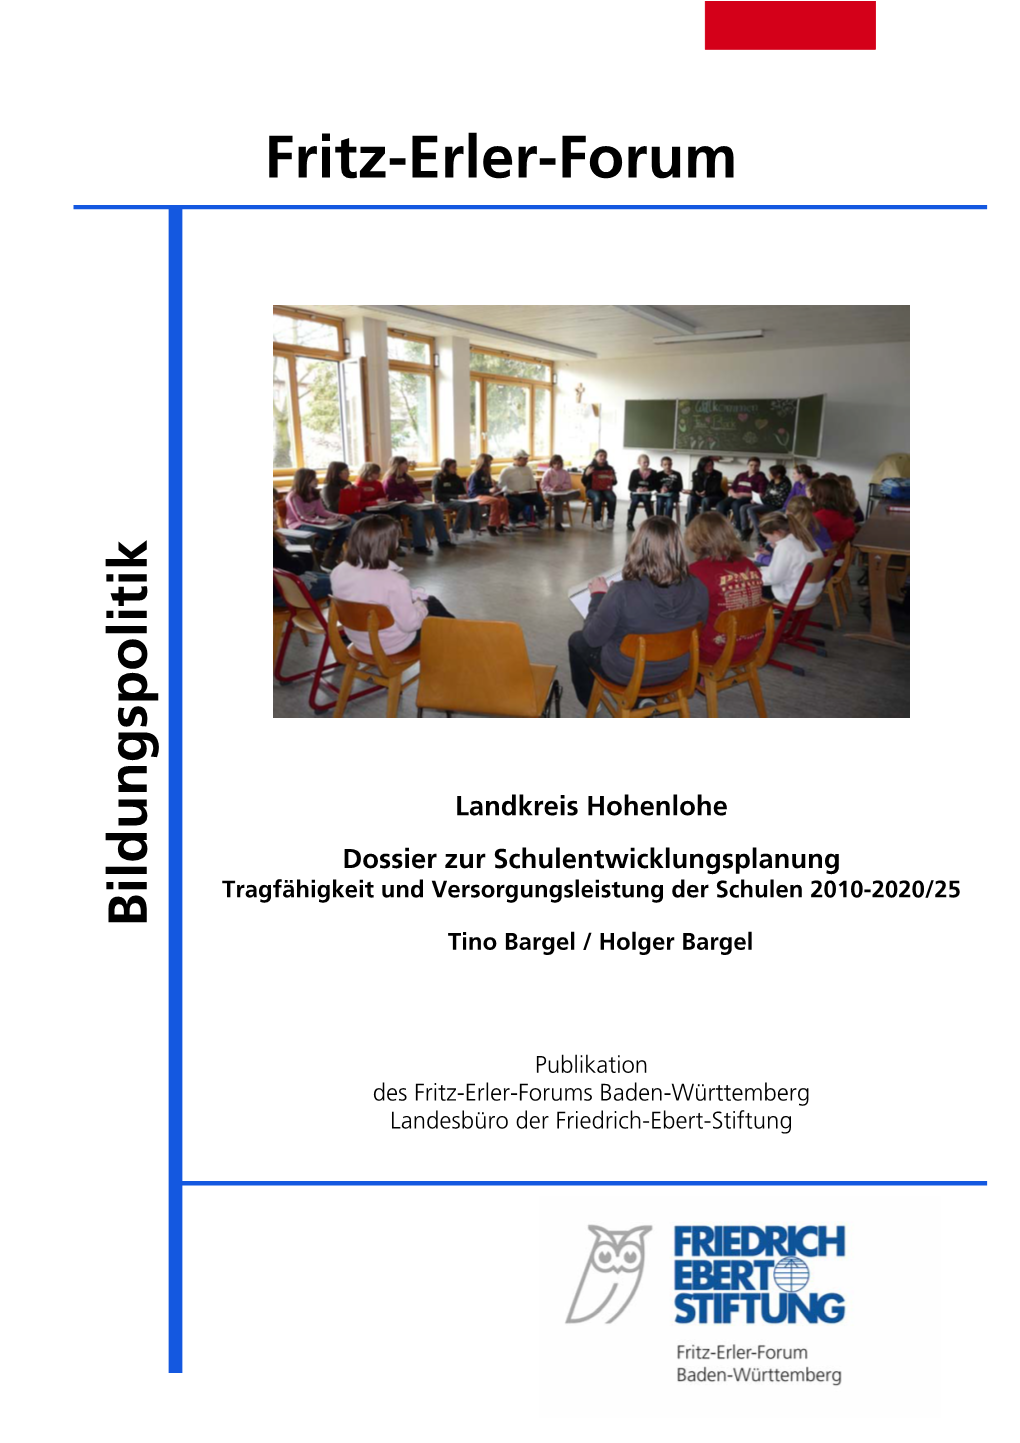 Dossier Zur Schulentwicklungsplanung: Landkreis Hohenlohe